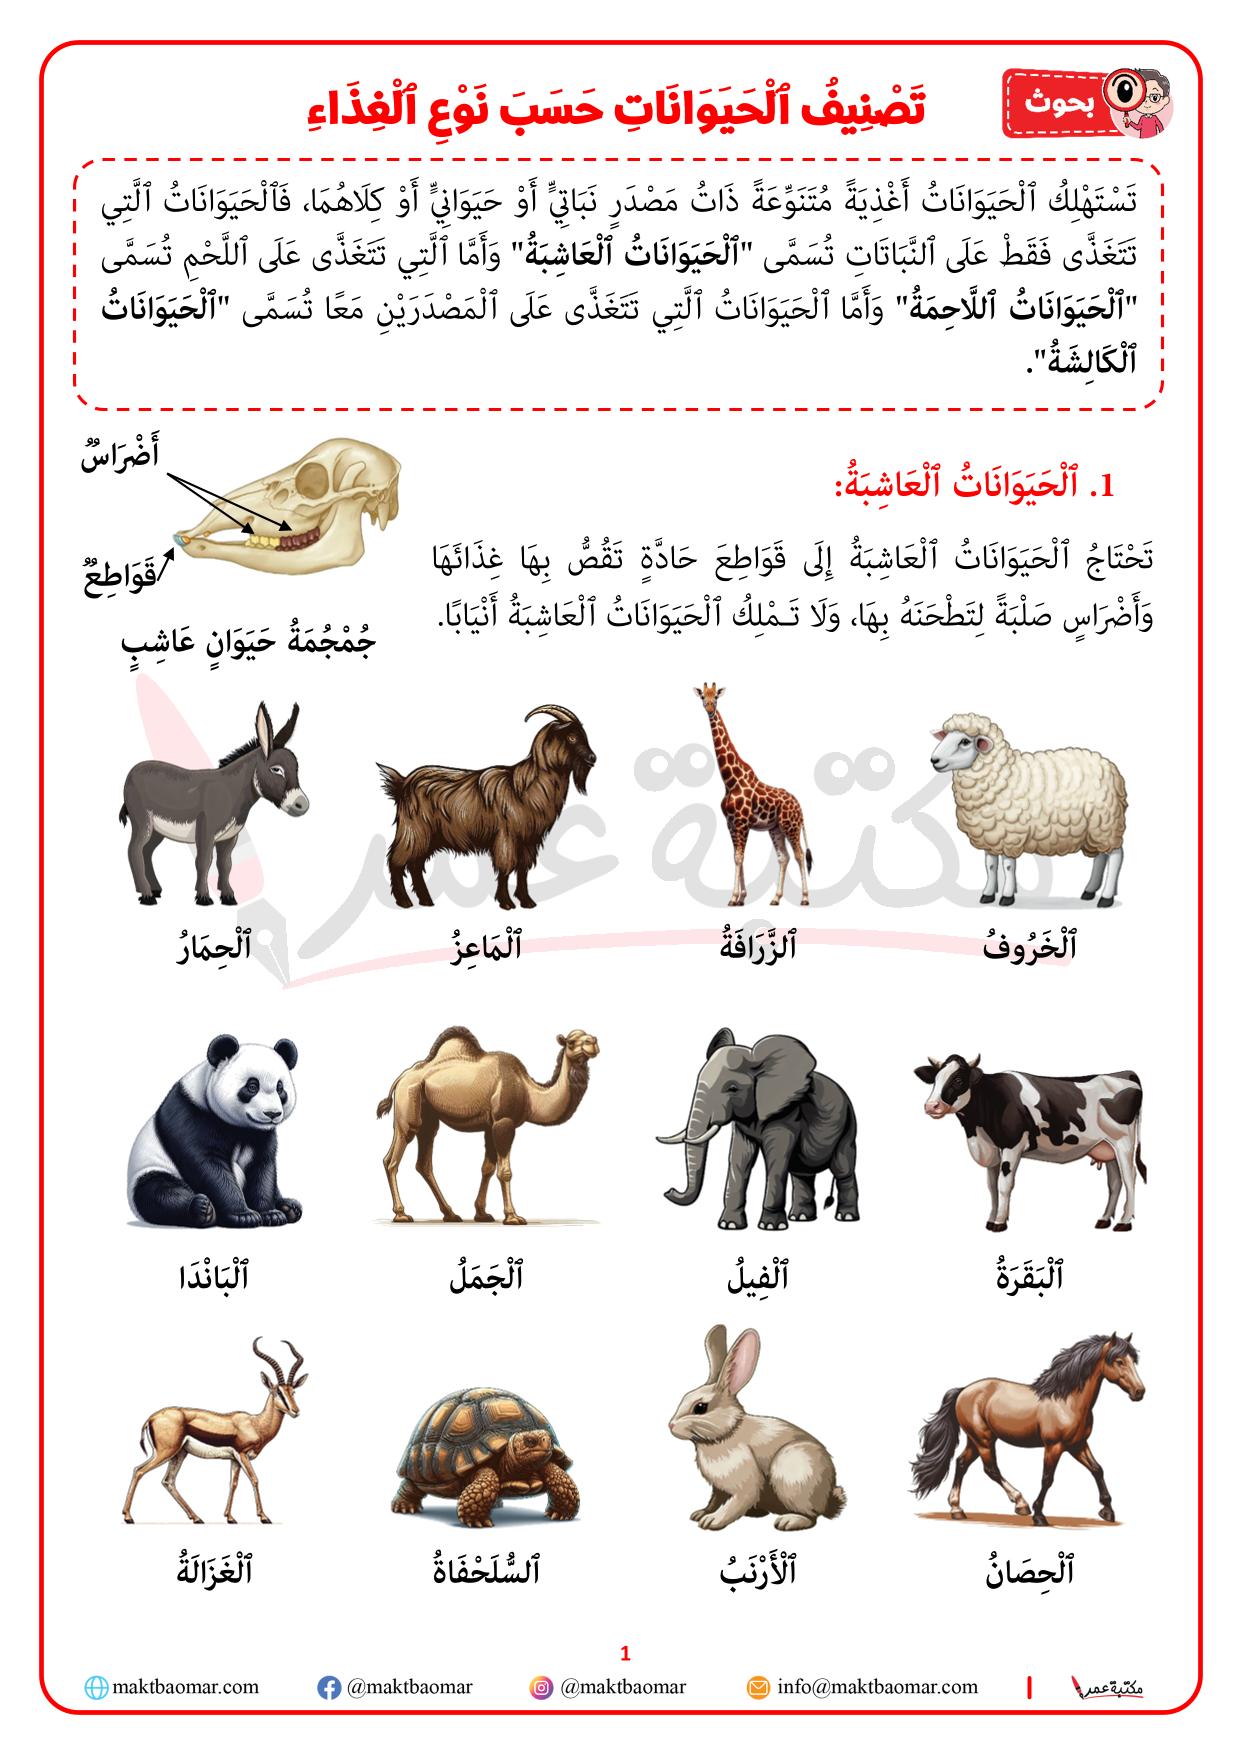 تصنيف الحيوانات حسب نوع الغذاء الذي تعيش عليه-1